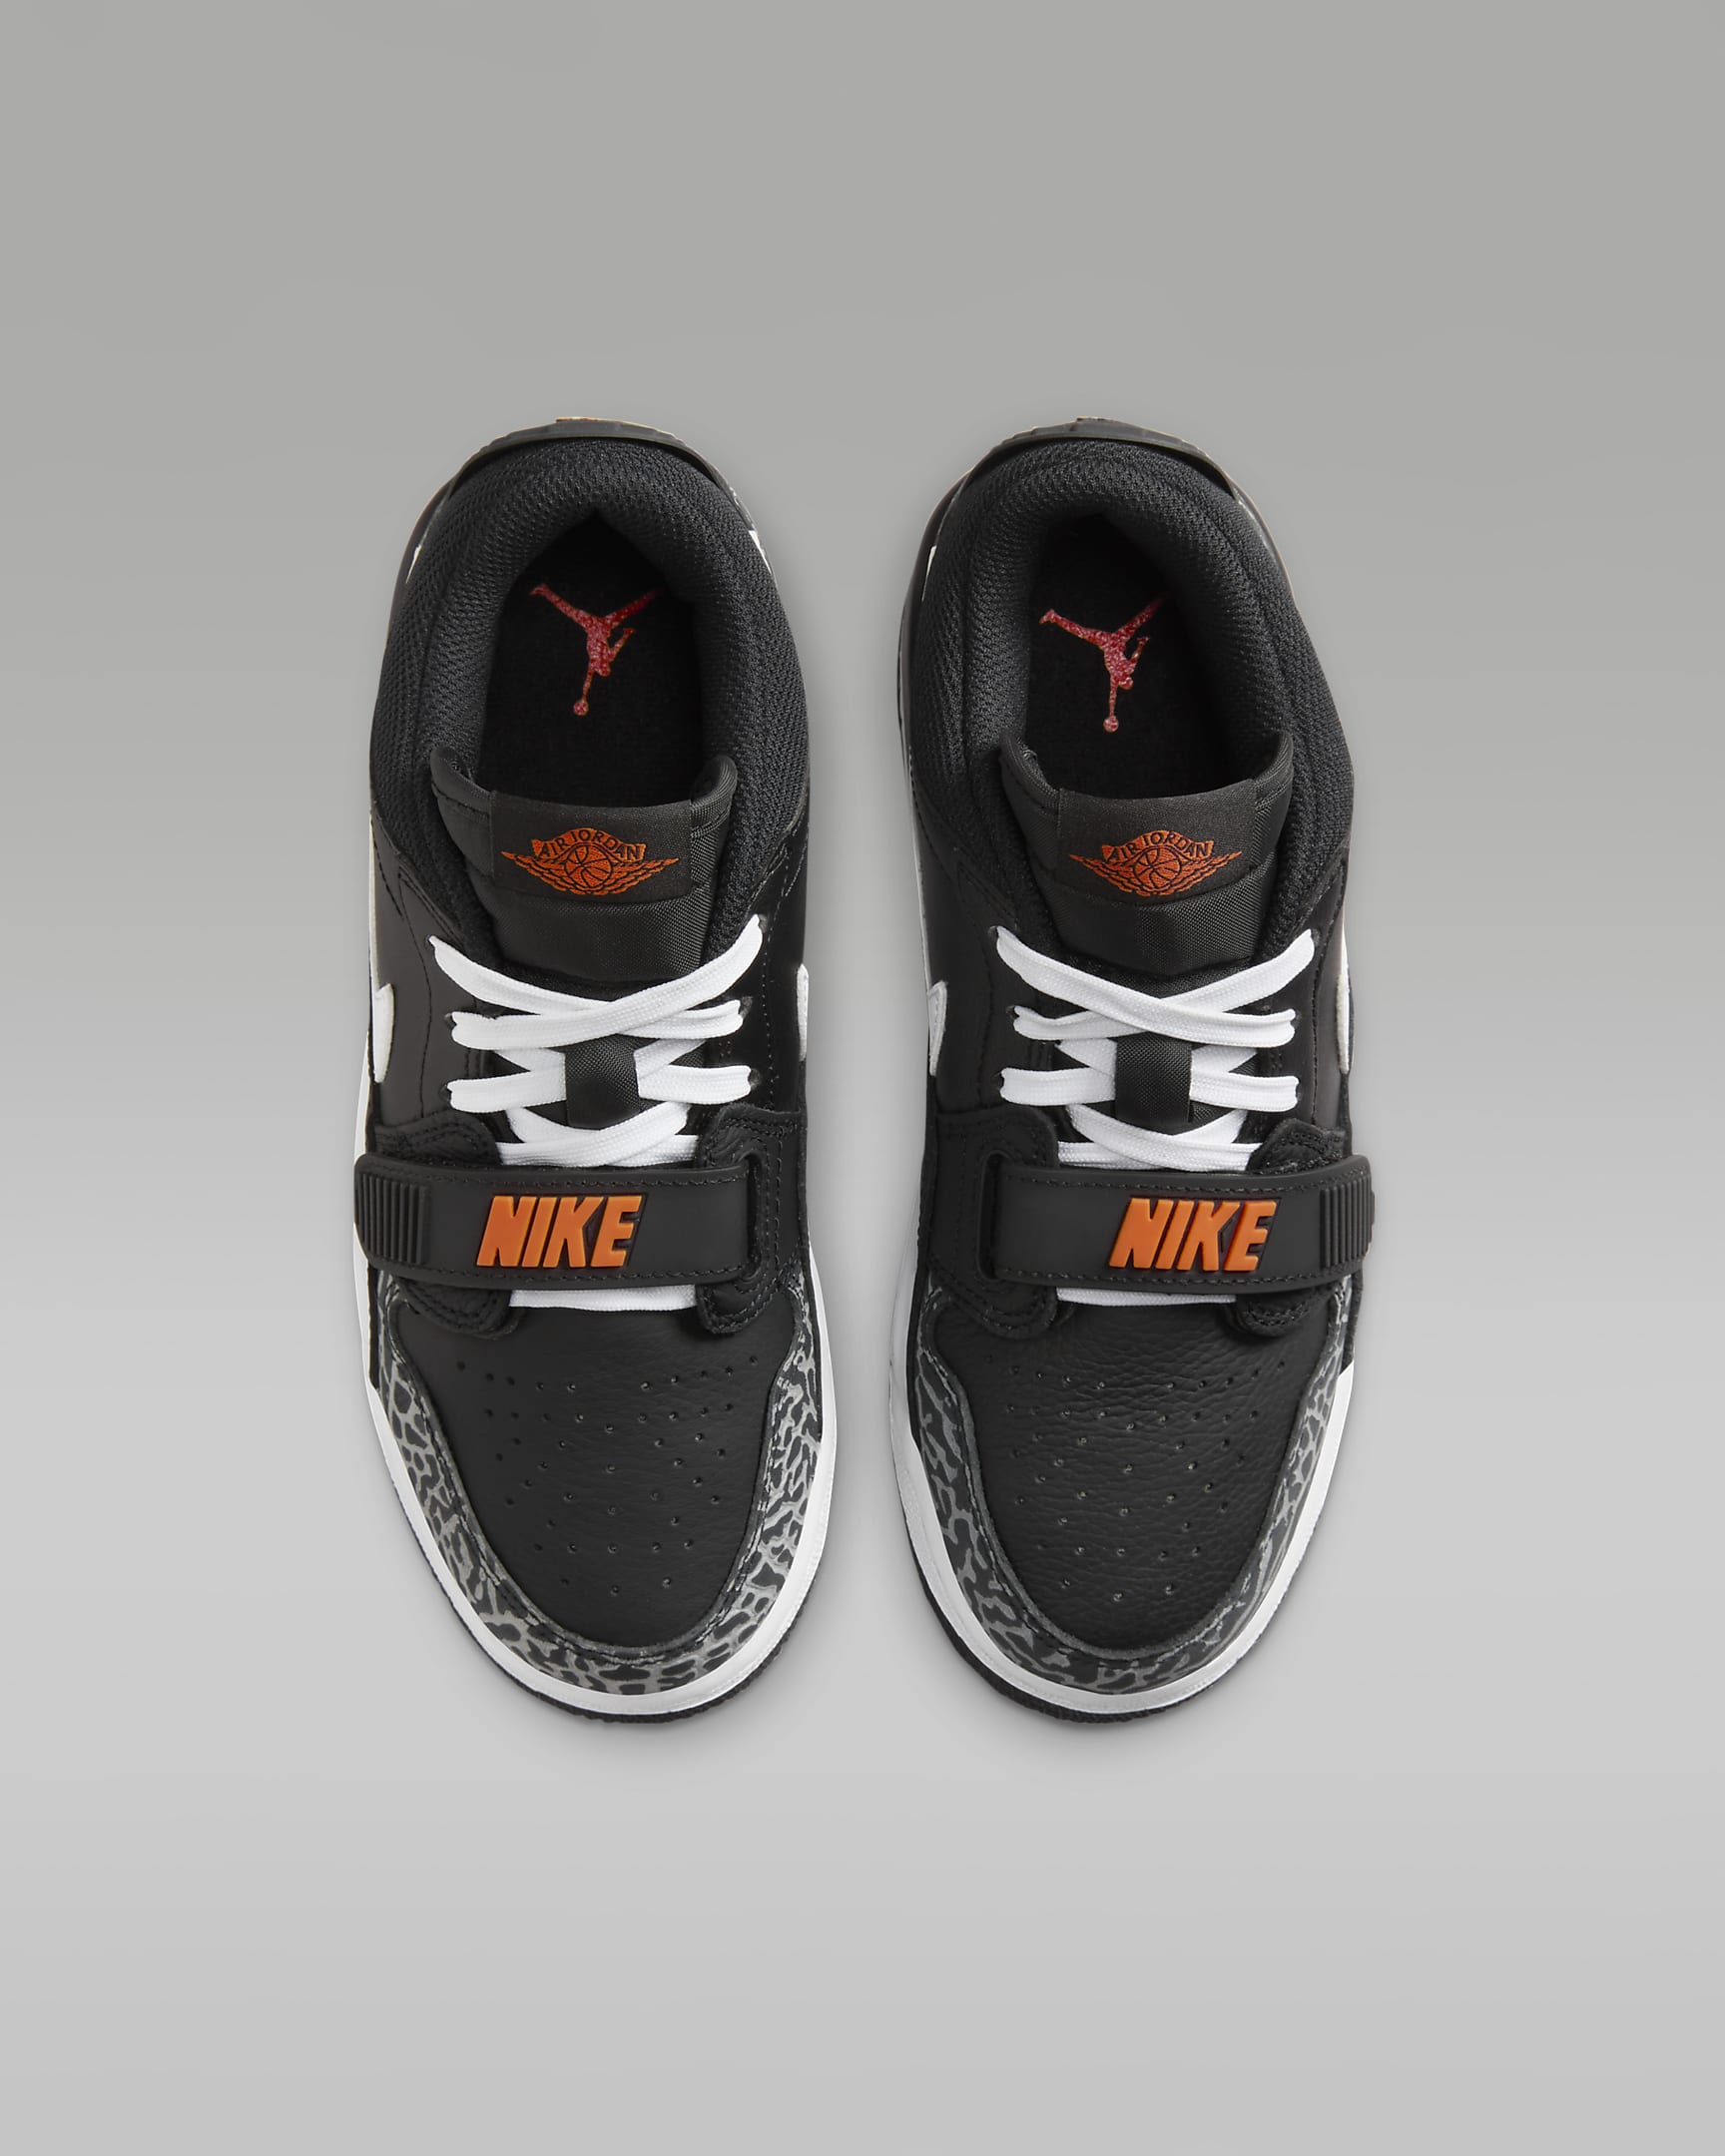 Air Jordan Legacy 312 Low Older Kids' Shoes - Black/Wolf Grey/Safety Orange/White